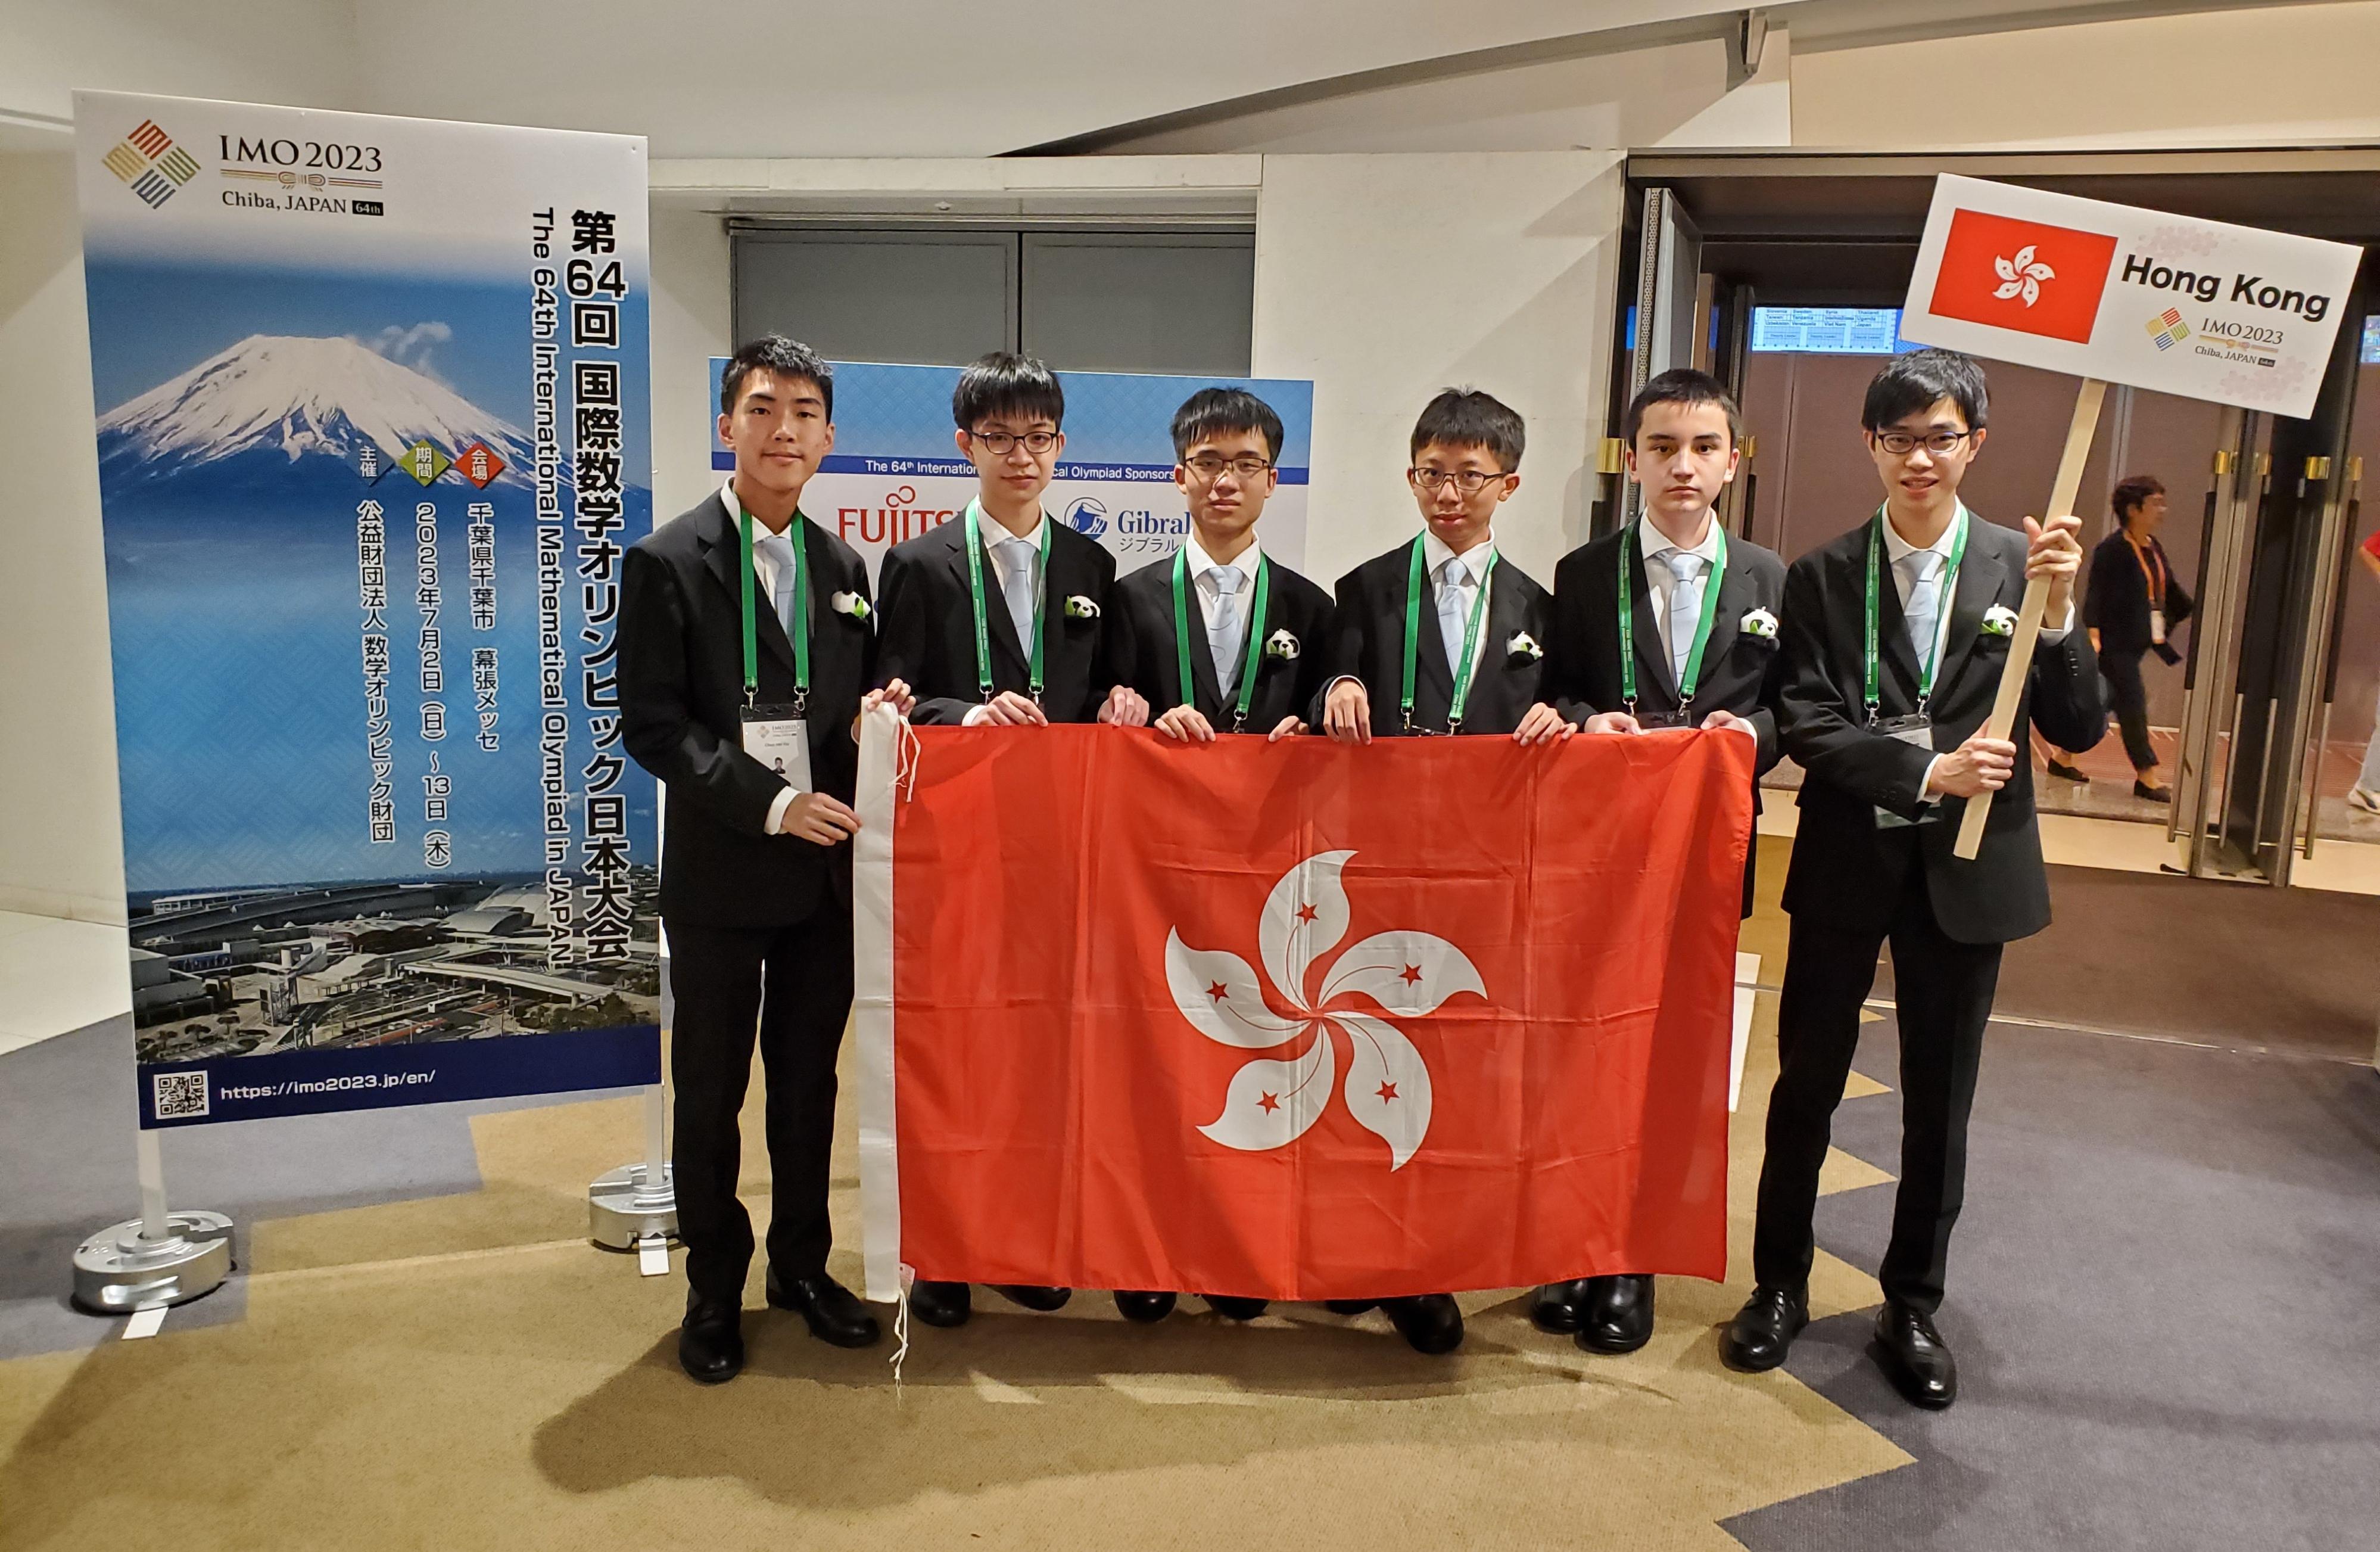 六名学生代表香港于七月二日至十三日参加在日本举行的第六十四届「国际数学奥林匹克」，表现优异。他们是（左起）姚缙熹、伍学礼、谢昶豪、关容浩、刘嘉泓和朱卓熹。
